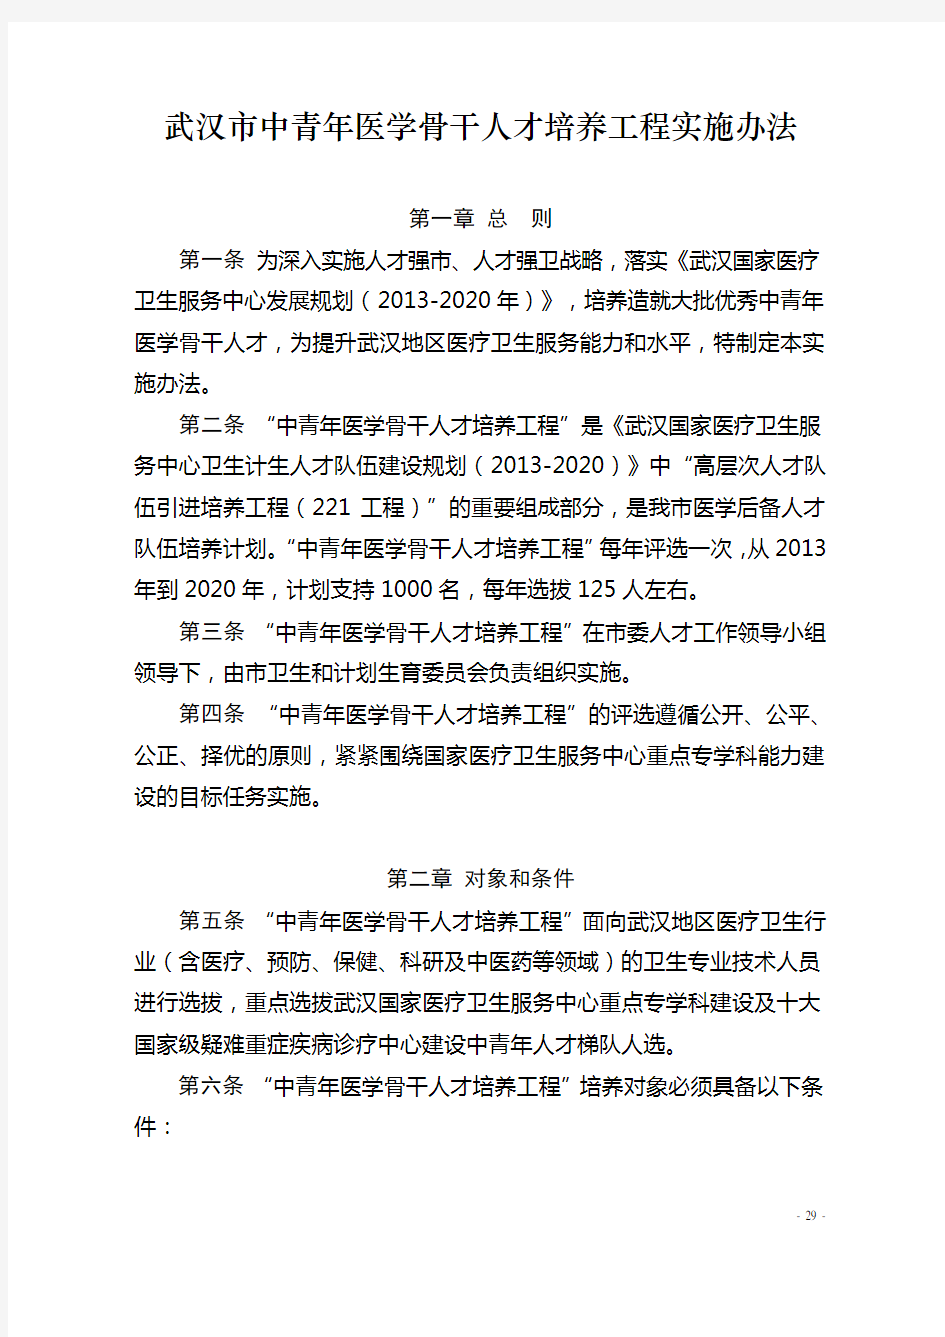 4-武汉中青年医学骨干人才队伍培养工程实施办法0705